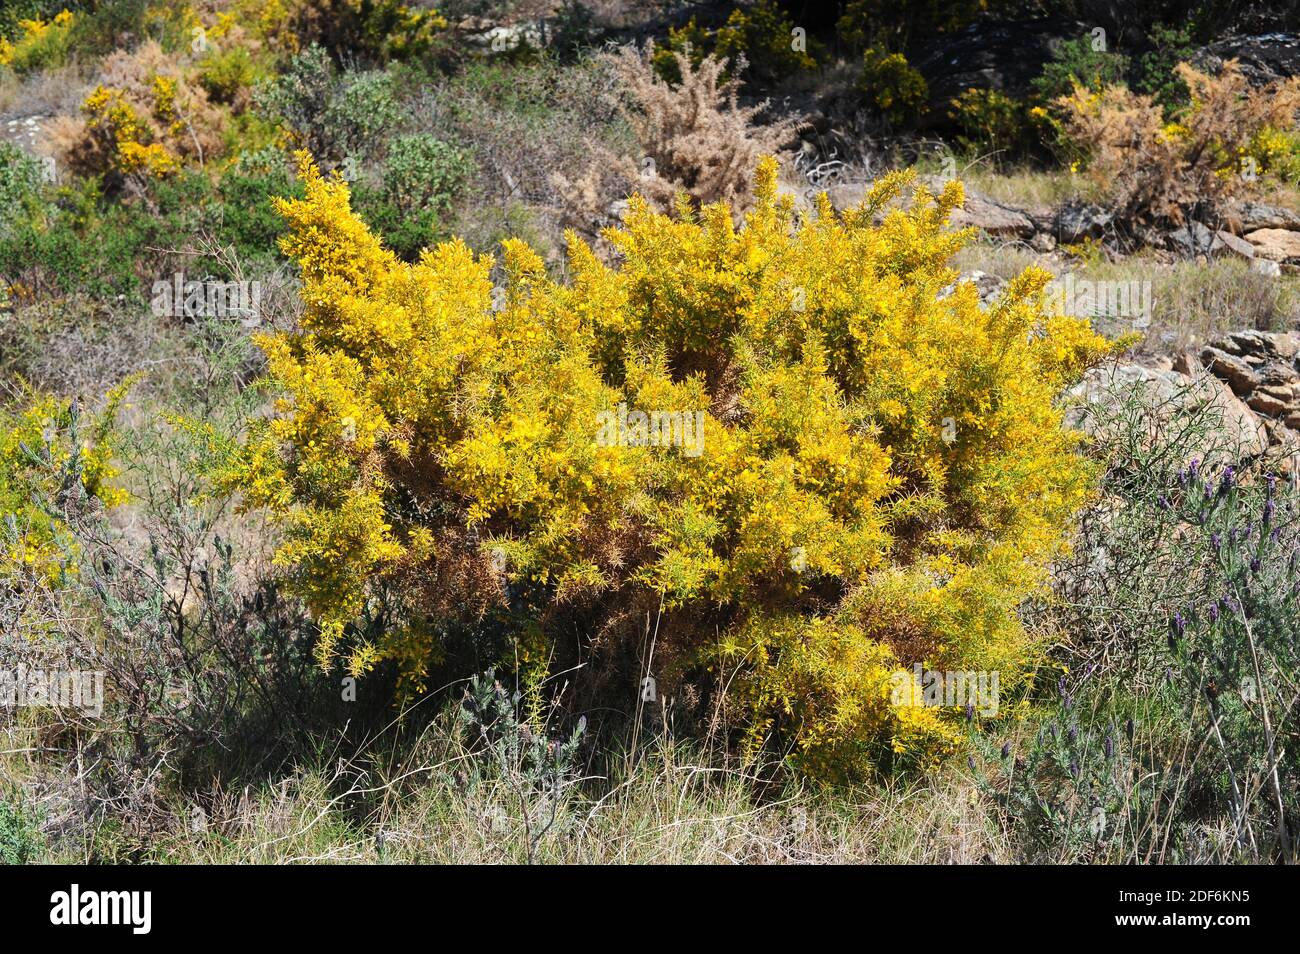 Gorrito de flor pequeña o gorrito español (Ulex parviflorus) Es un arbusto fuertemente espinoso nativo de la cuenca mediterránea occidental y centro y sur Foto de stock